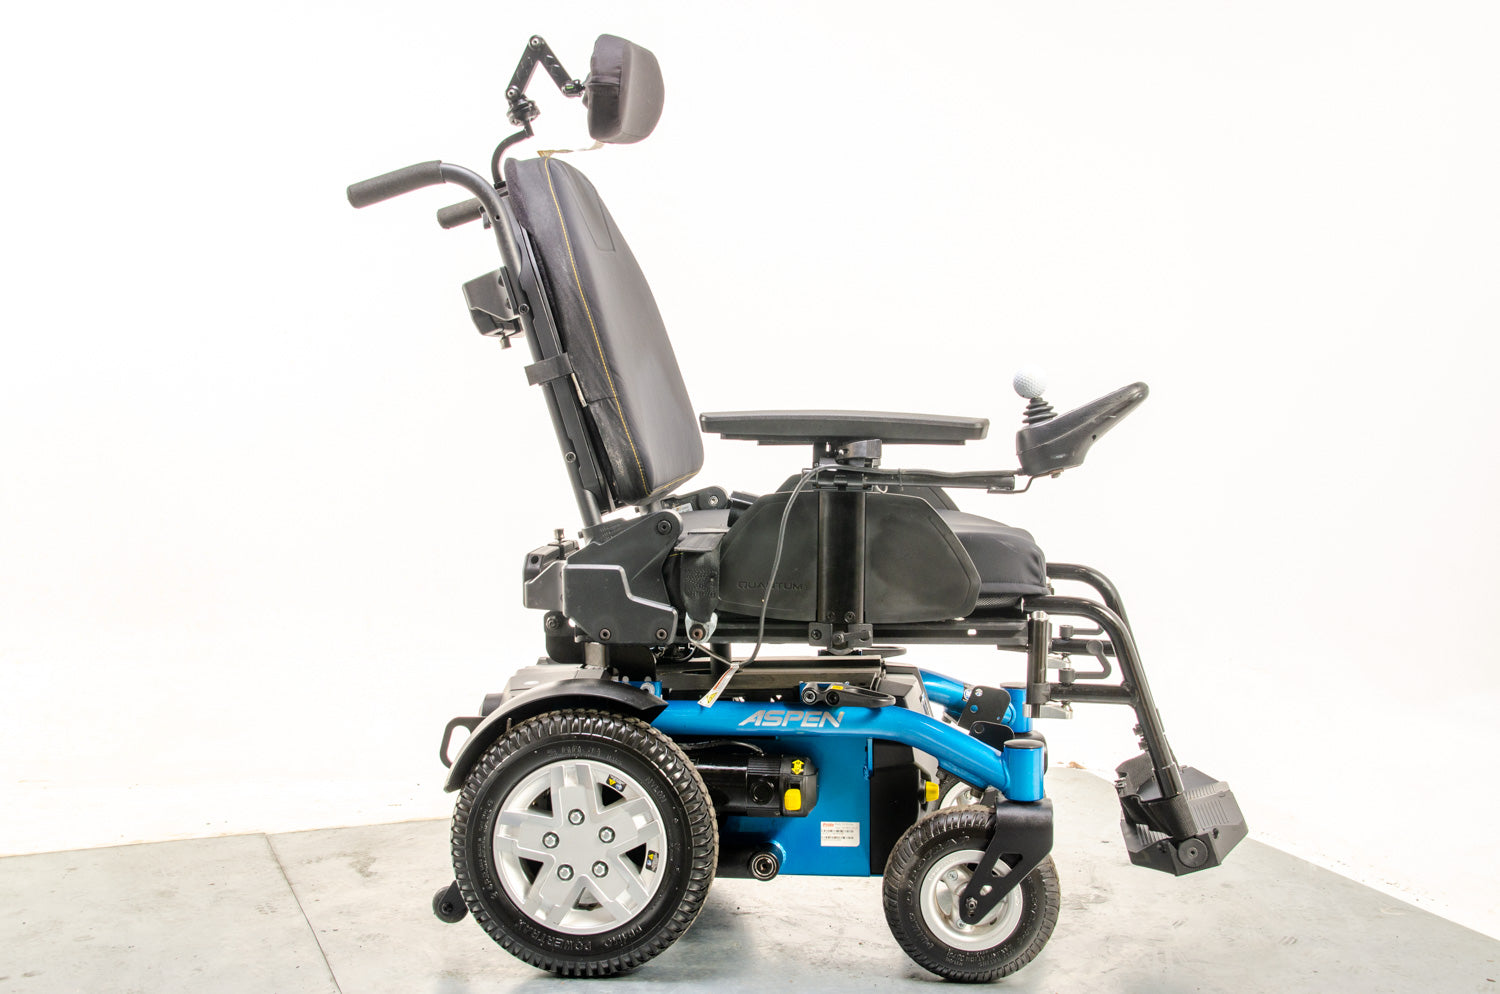 Pride Quantum Aspen Compact Powerchair Electric Wheelchair rear-wheel drive